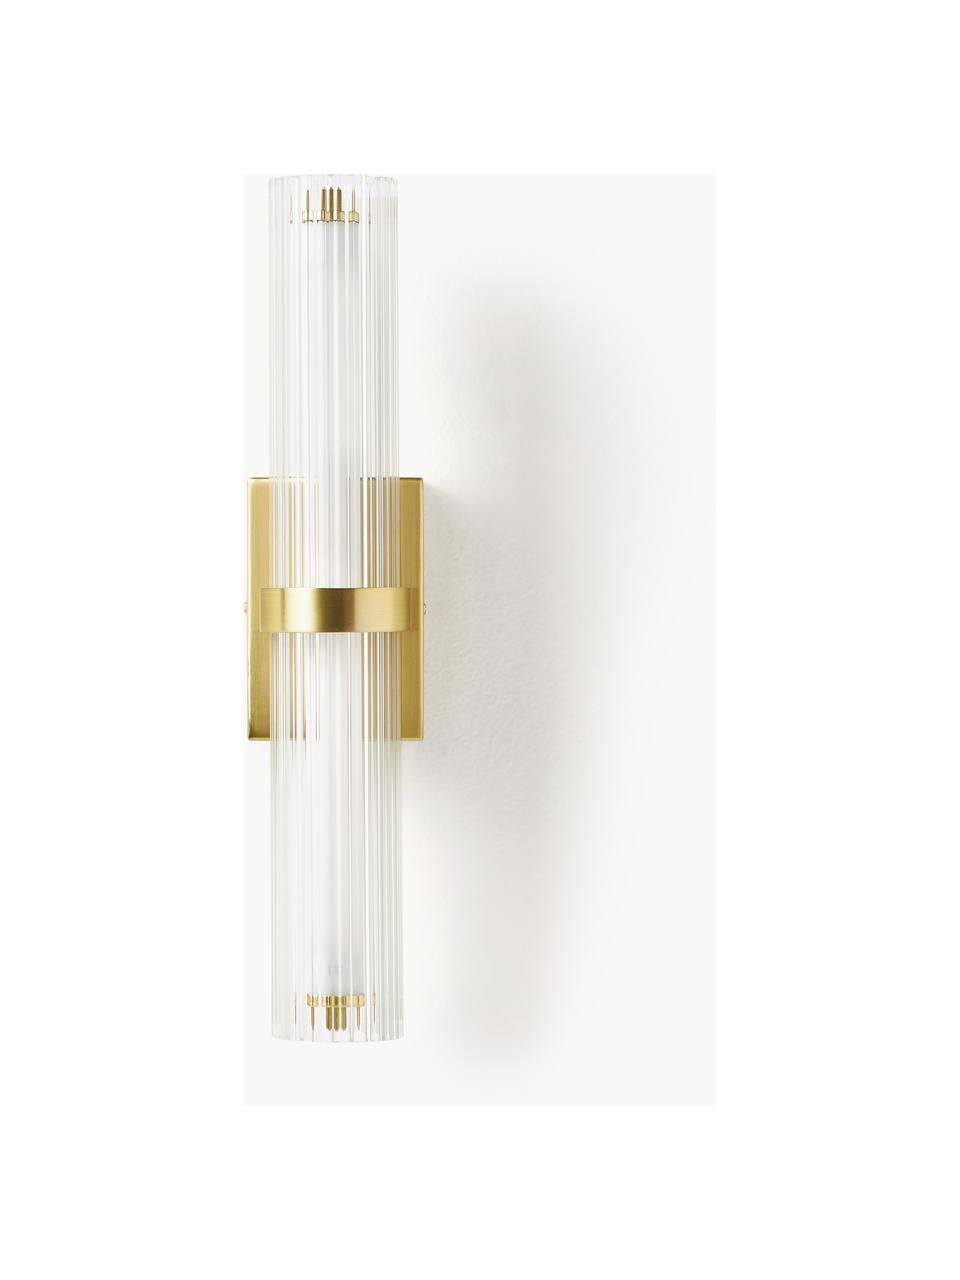 LED wandlamp Mirabella, Lampenkap: glas, Transparant, goudkleurig, B 8 x H 38 cm